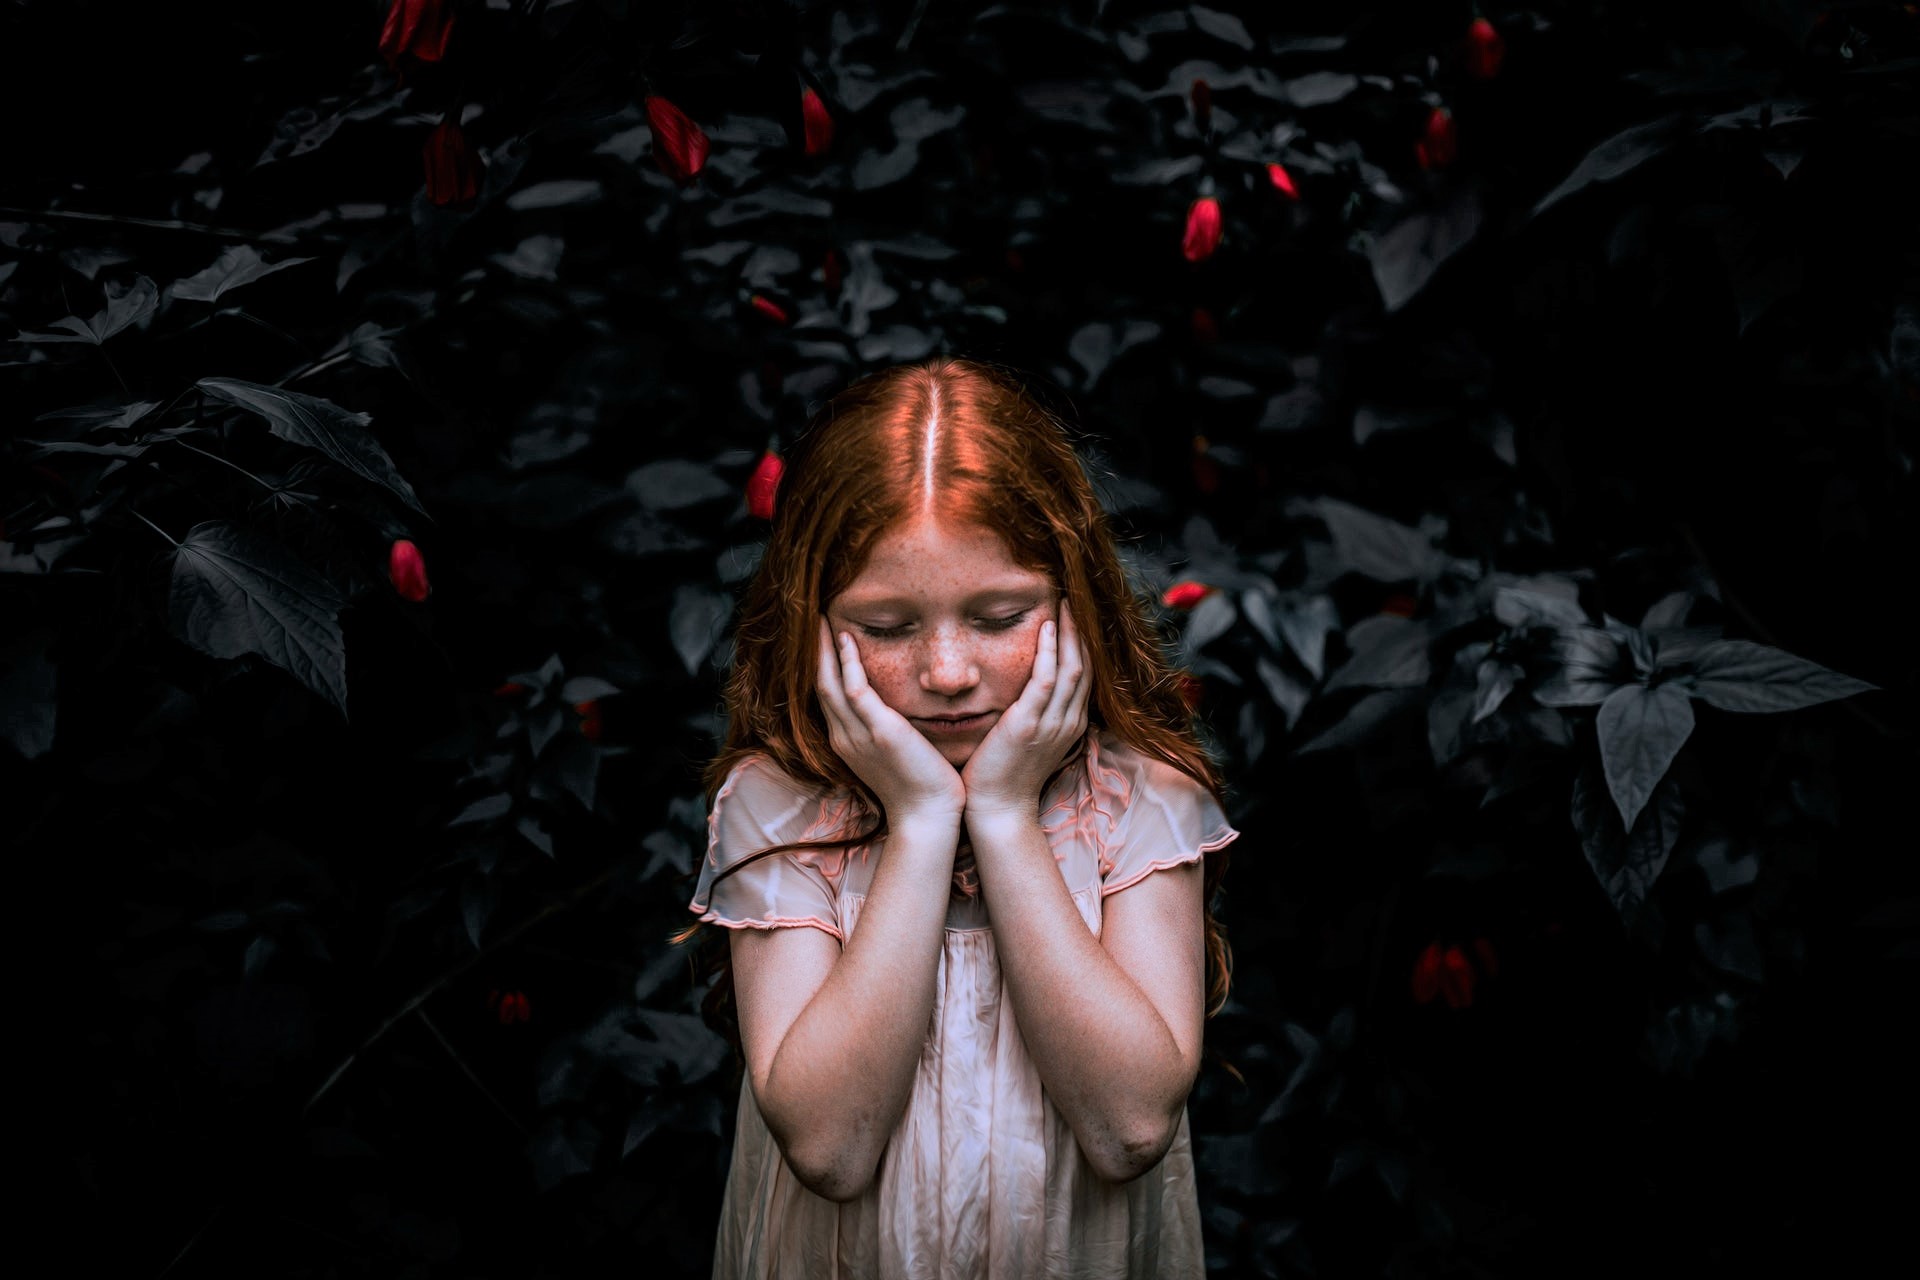 Ros meisje drukt handen tegen wangen tegen achtergrond van donkere struik